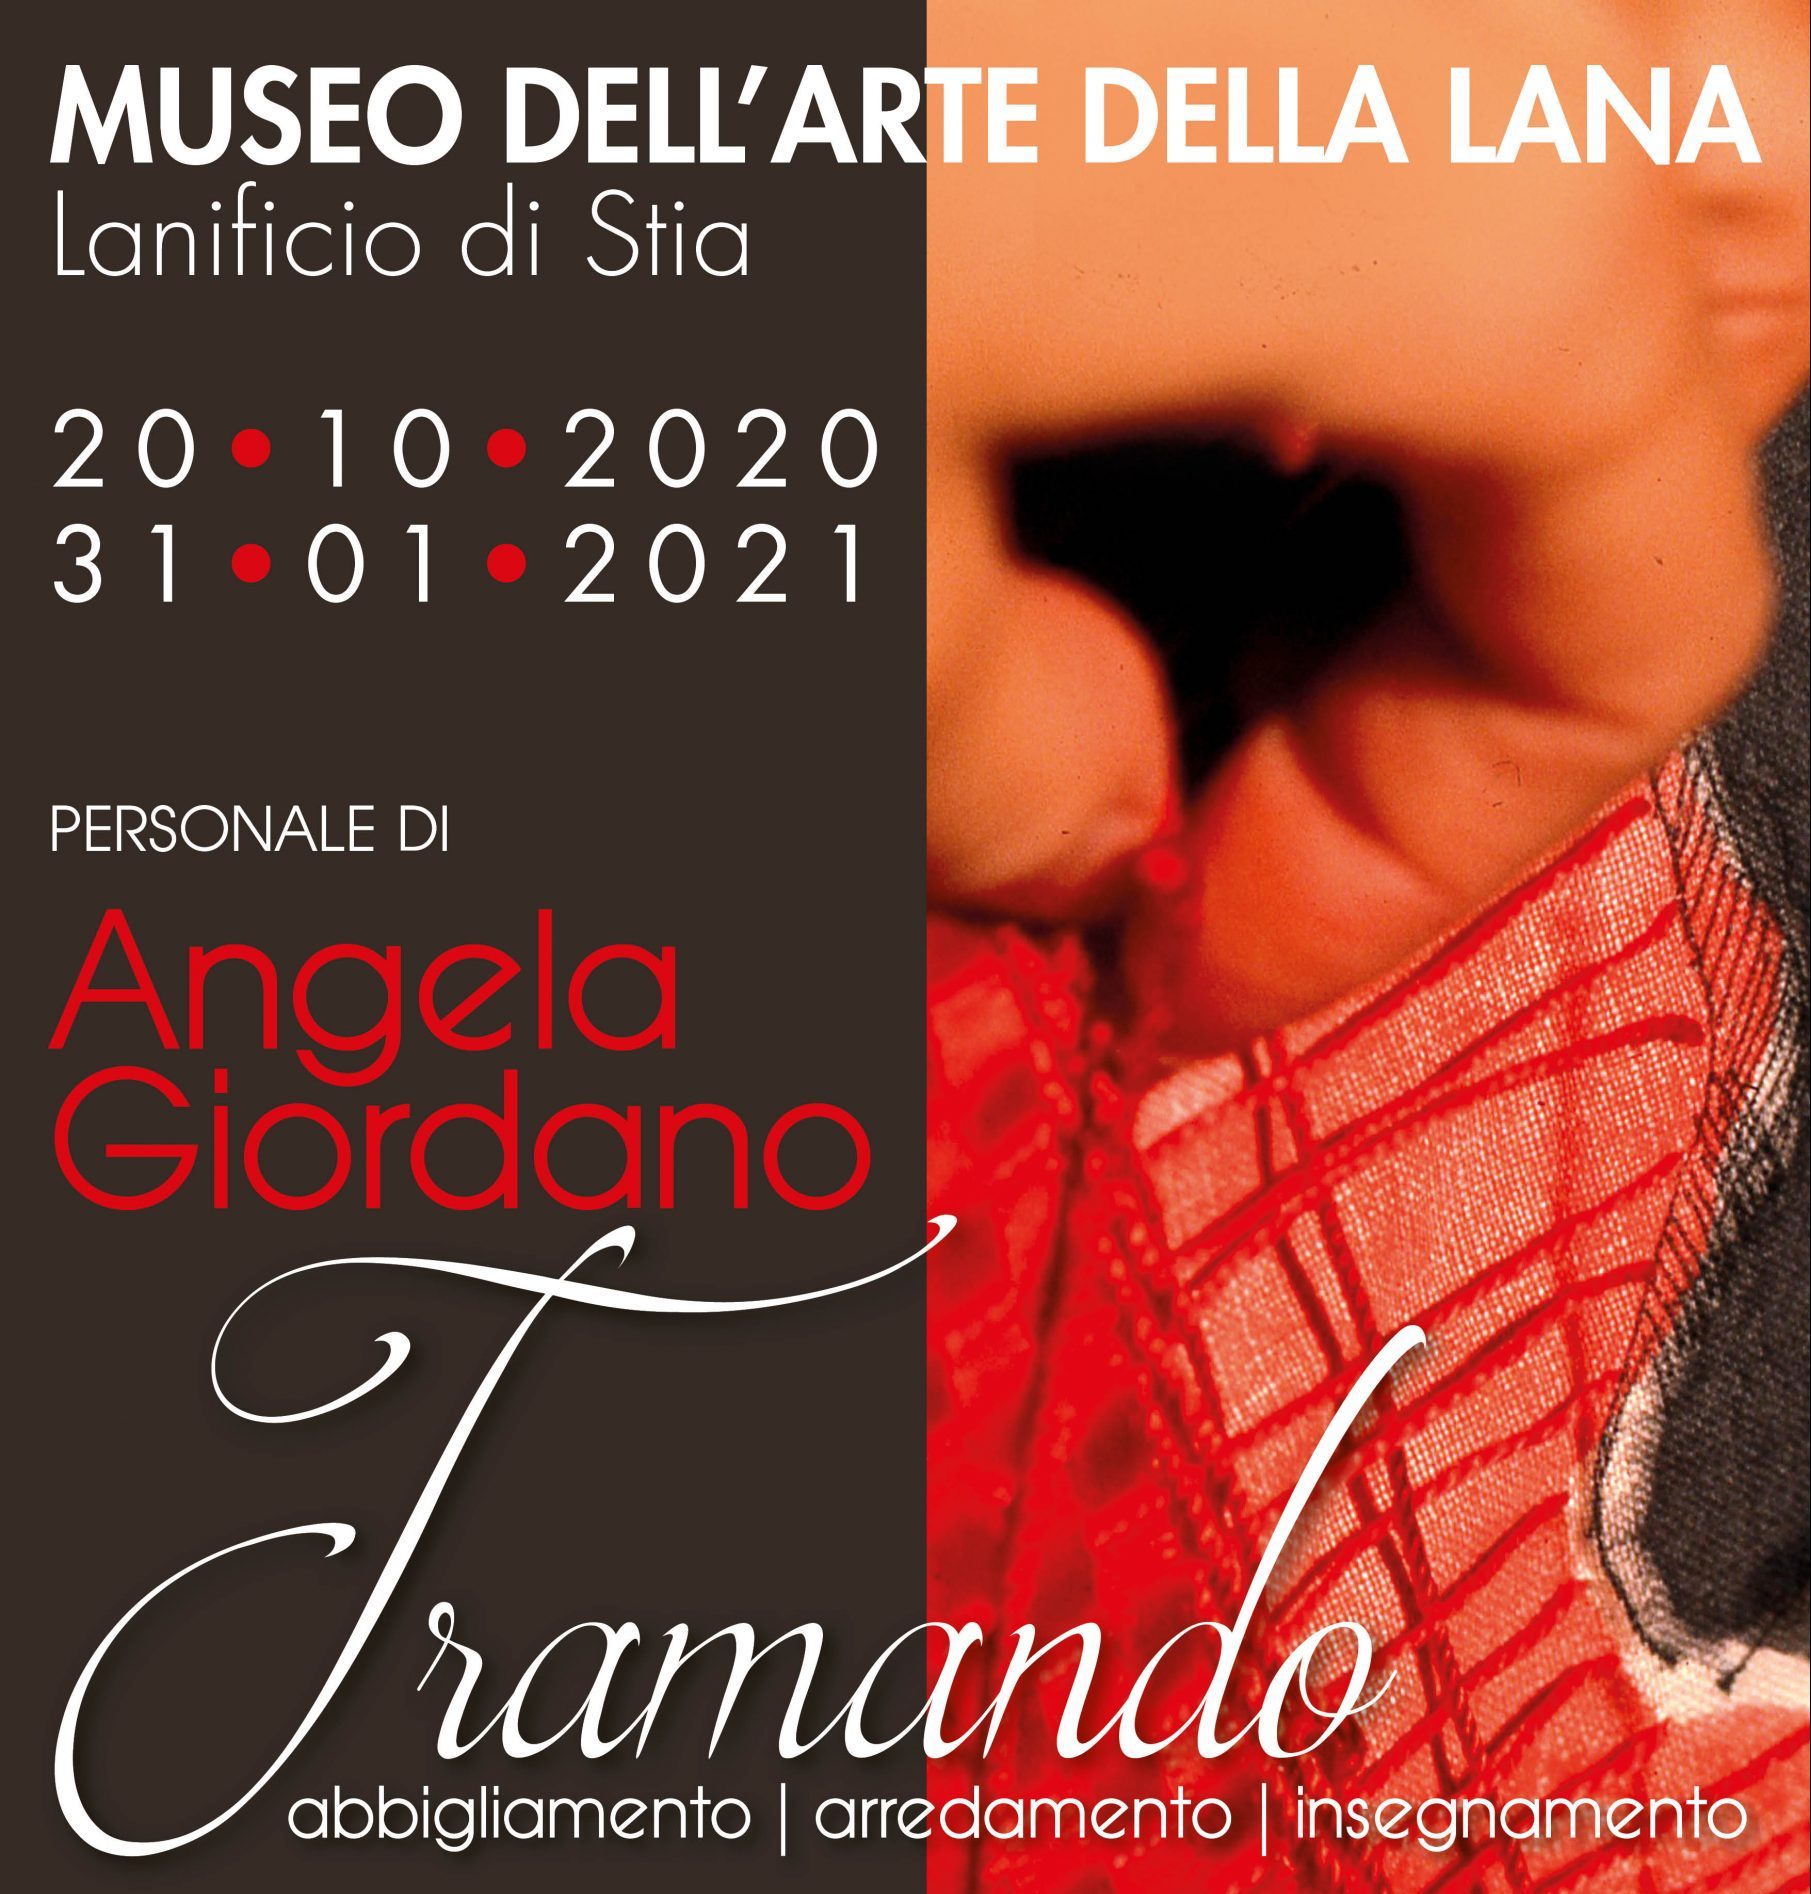 Inaugurazione della mostra TRAMANDO, la personale di Angela Giordano